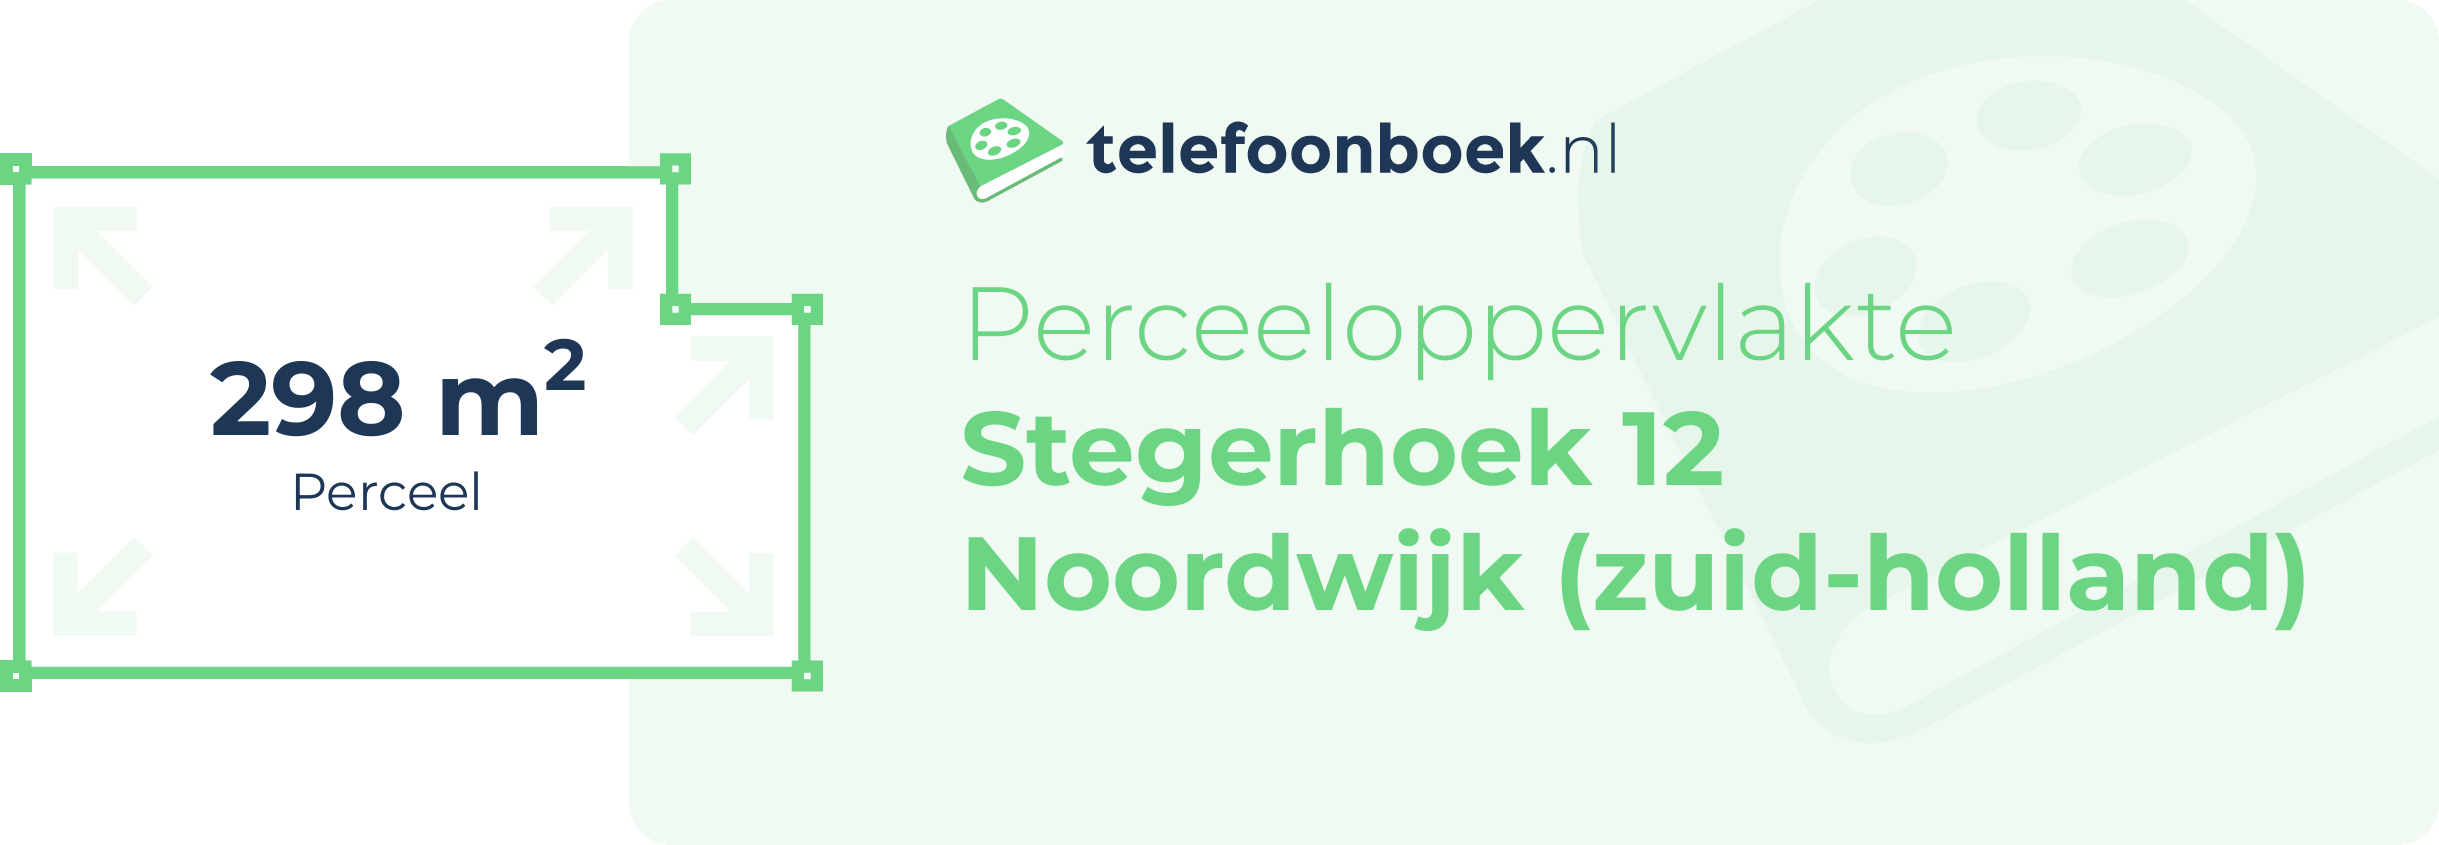 Perceeloppervlakte Stegerhoek 12 Noordwijk (Zuid-Holland)